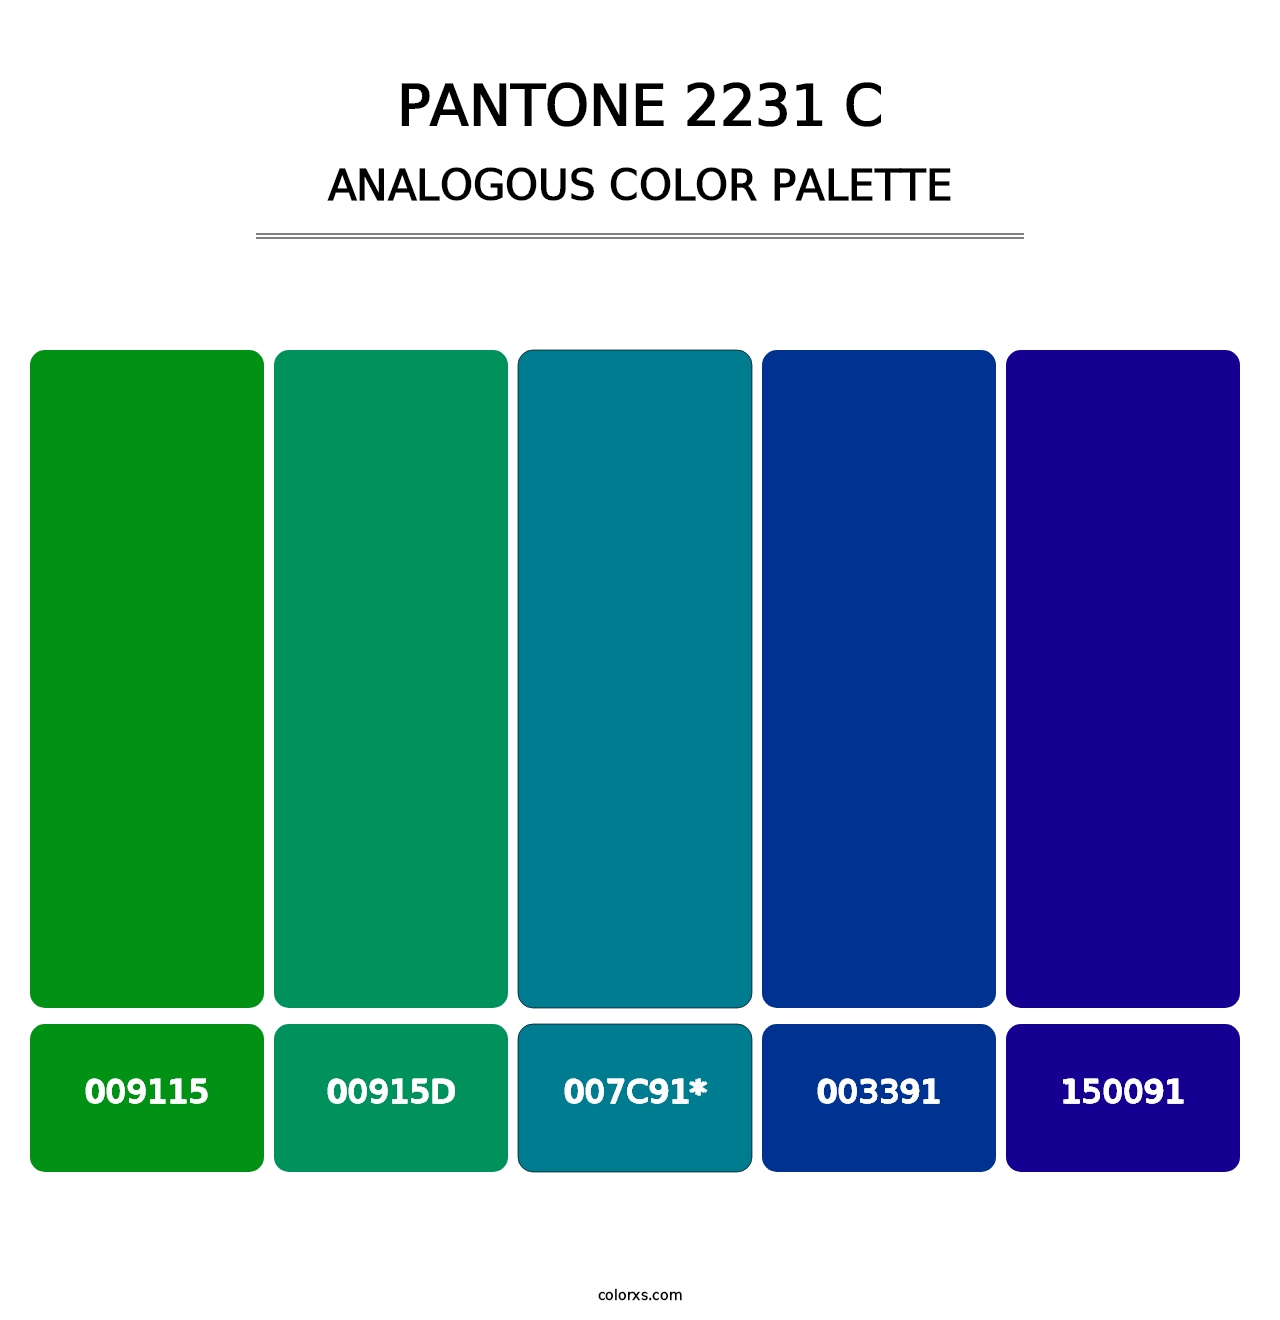 PANTONE 2231 C - Analogous Color Palette